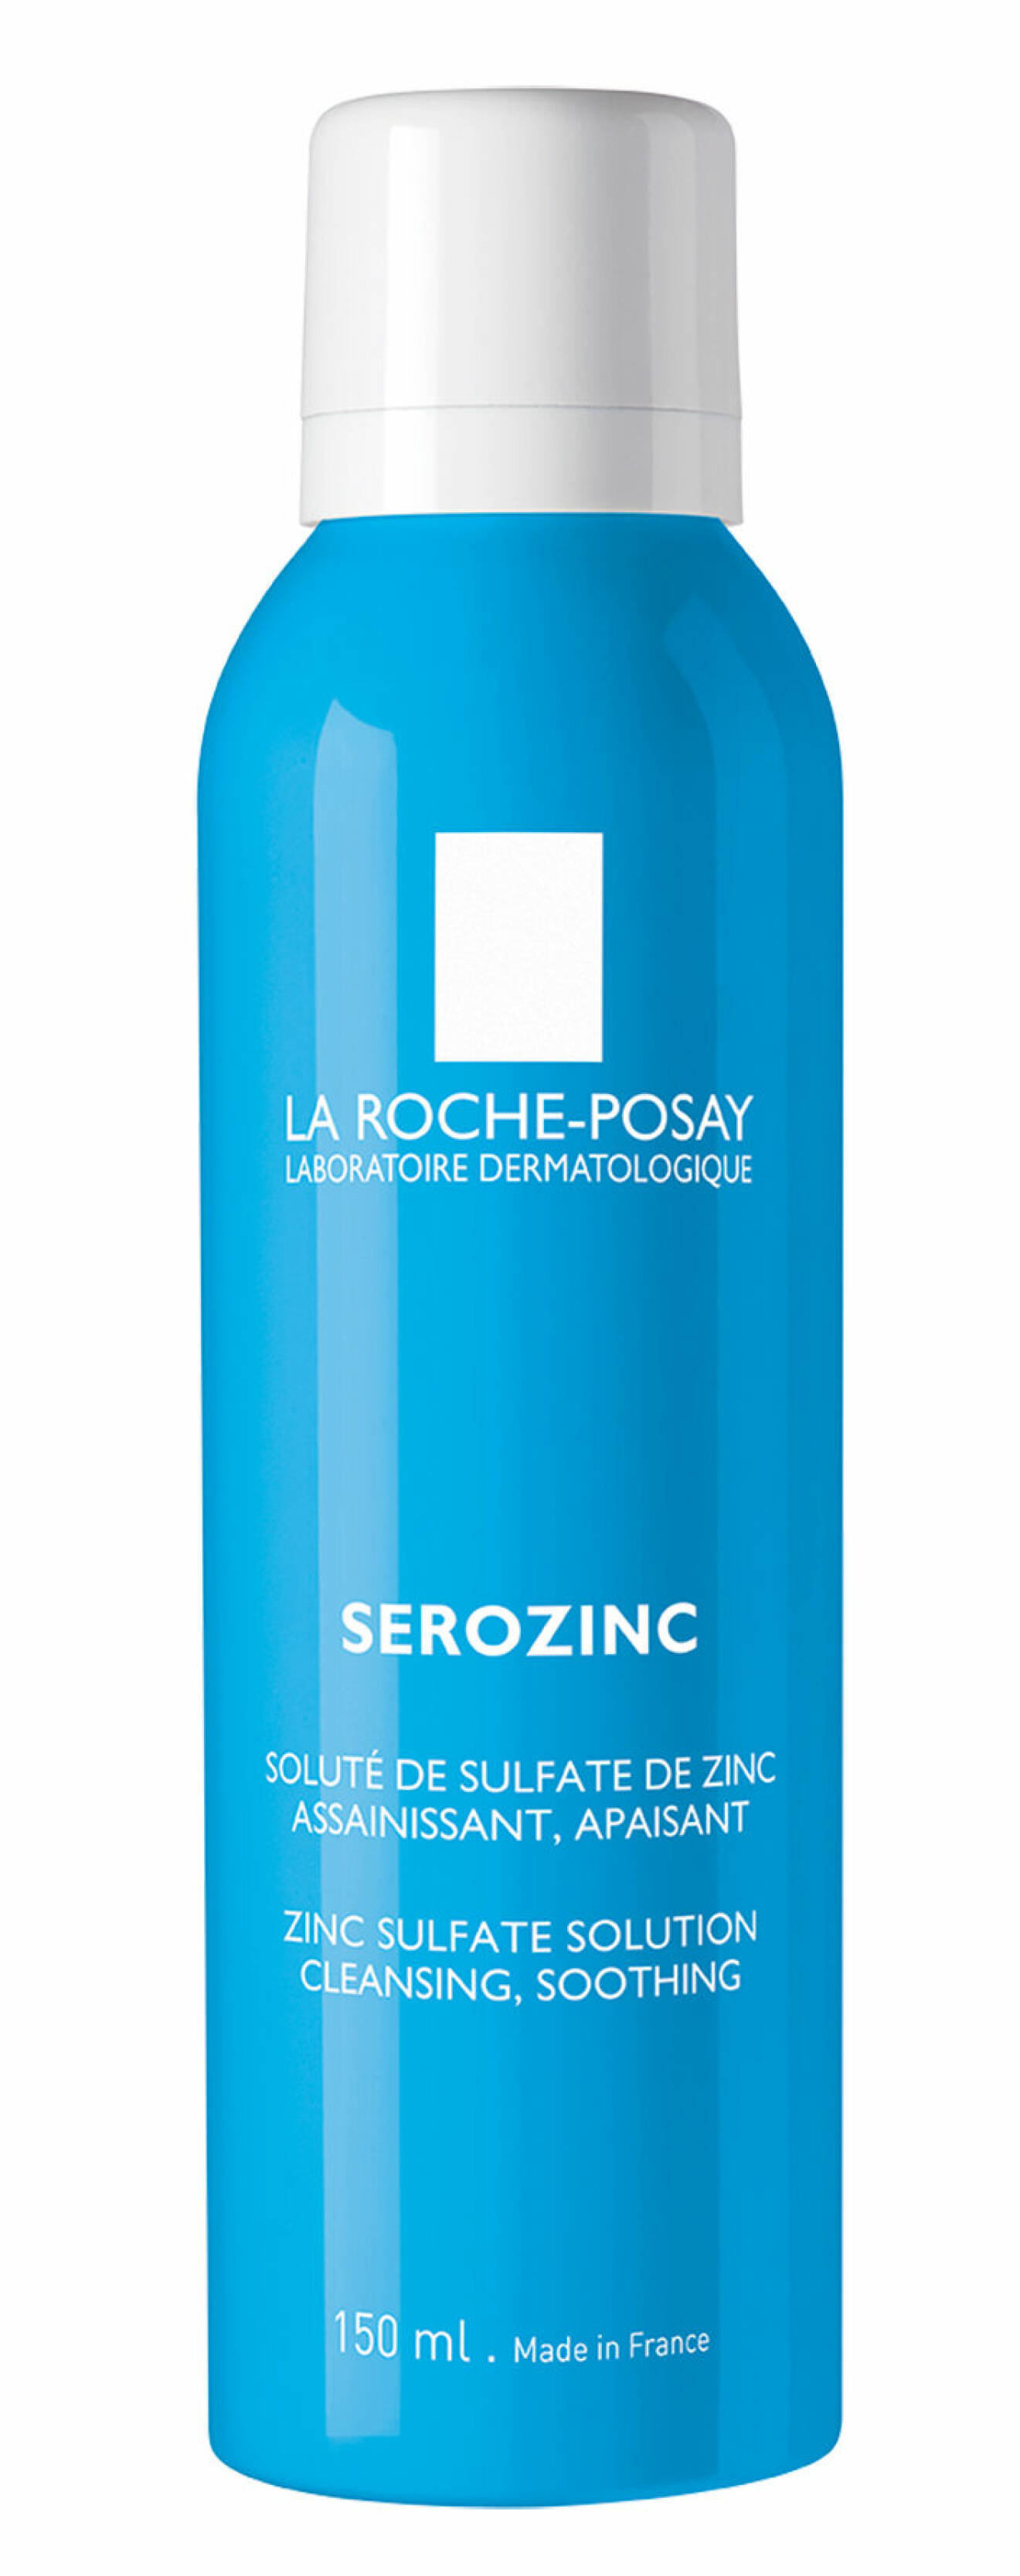 Serozinc toner från La Roche Posay